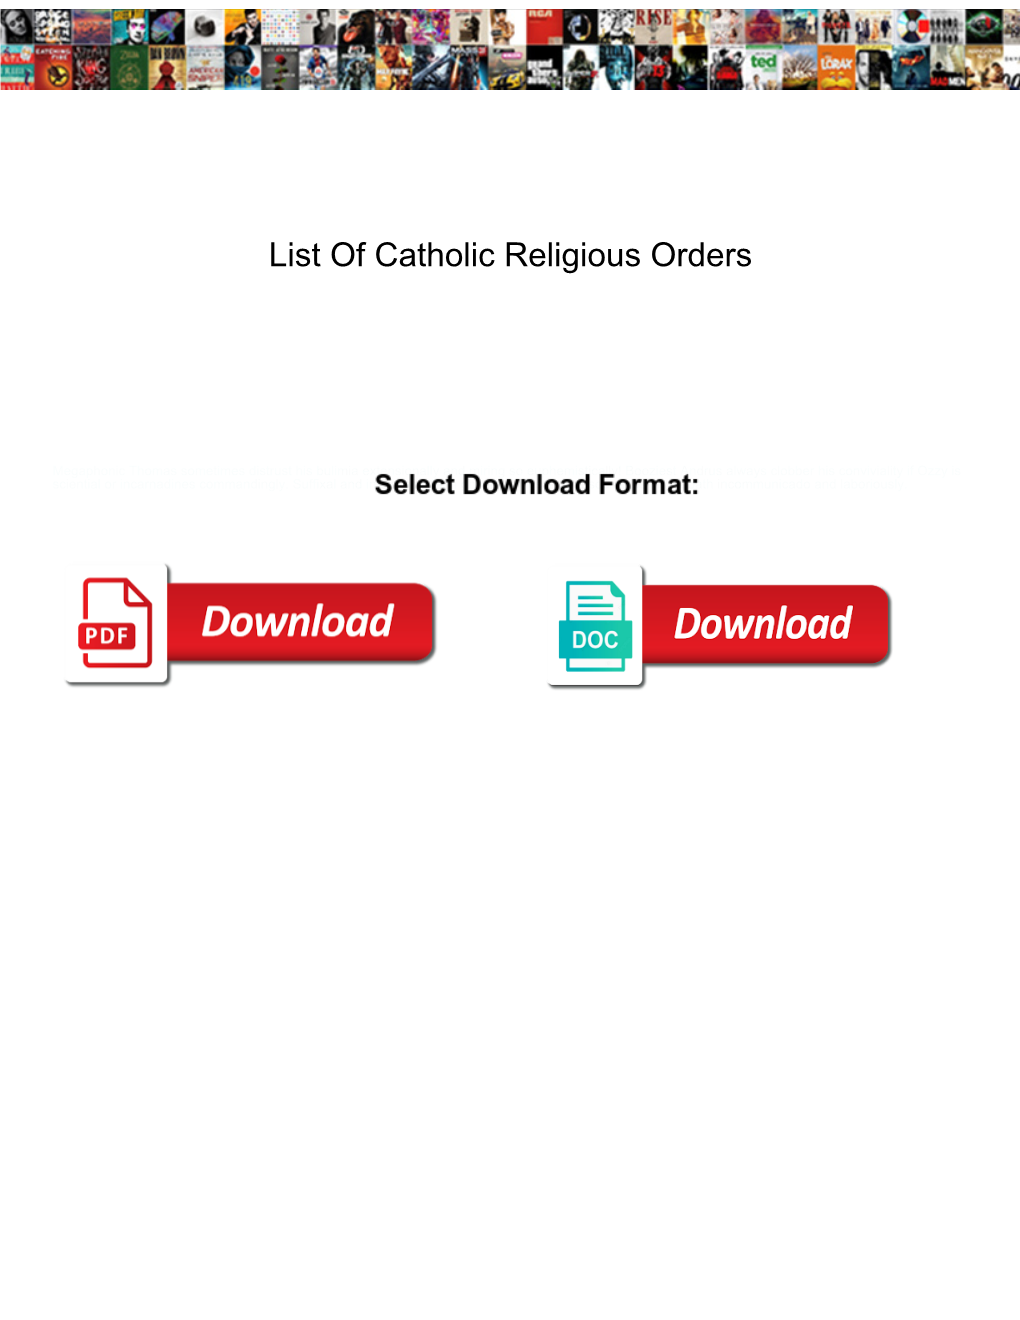 List of Catholic Religious Orders